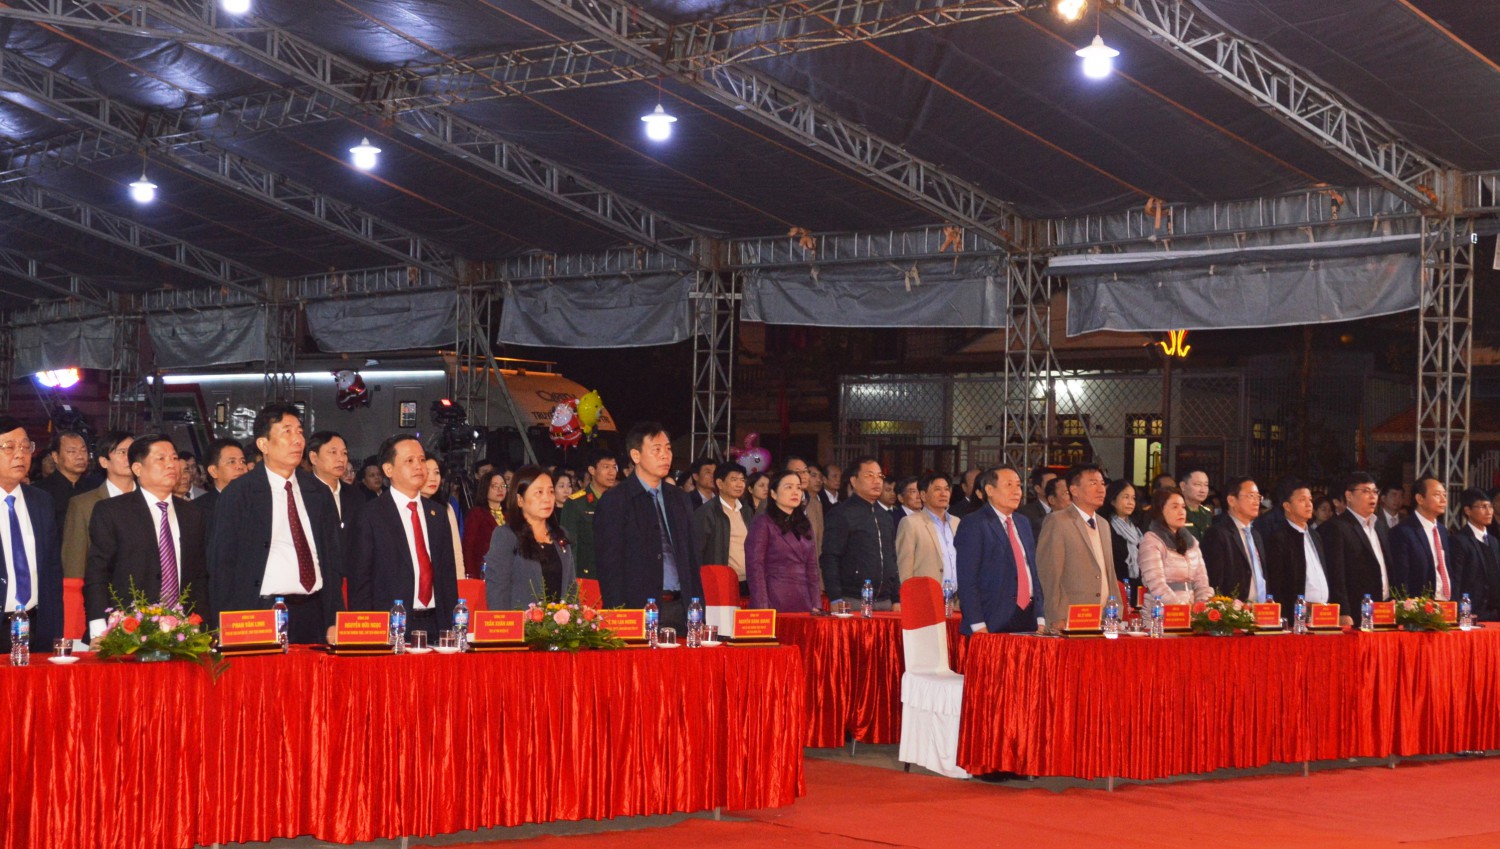 Lãnh đạo tỉnh và các đại biểu tham dự Lễ phát động phong trào “Quảng Trị chung sức xây dựng NTM” giai đoạn 2021-2025 và xây dựng huyện Triệu Phong đạt chuẩn NTM - Ảnh: ĐV